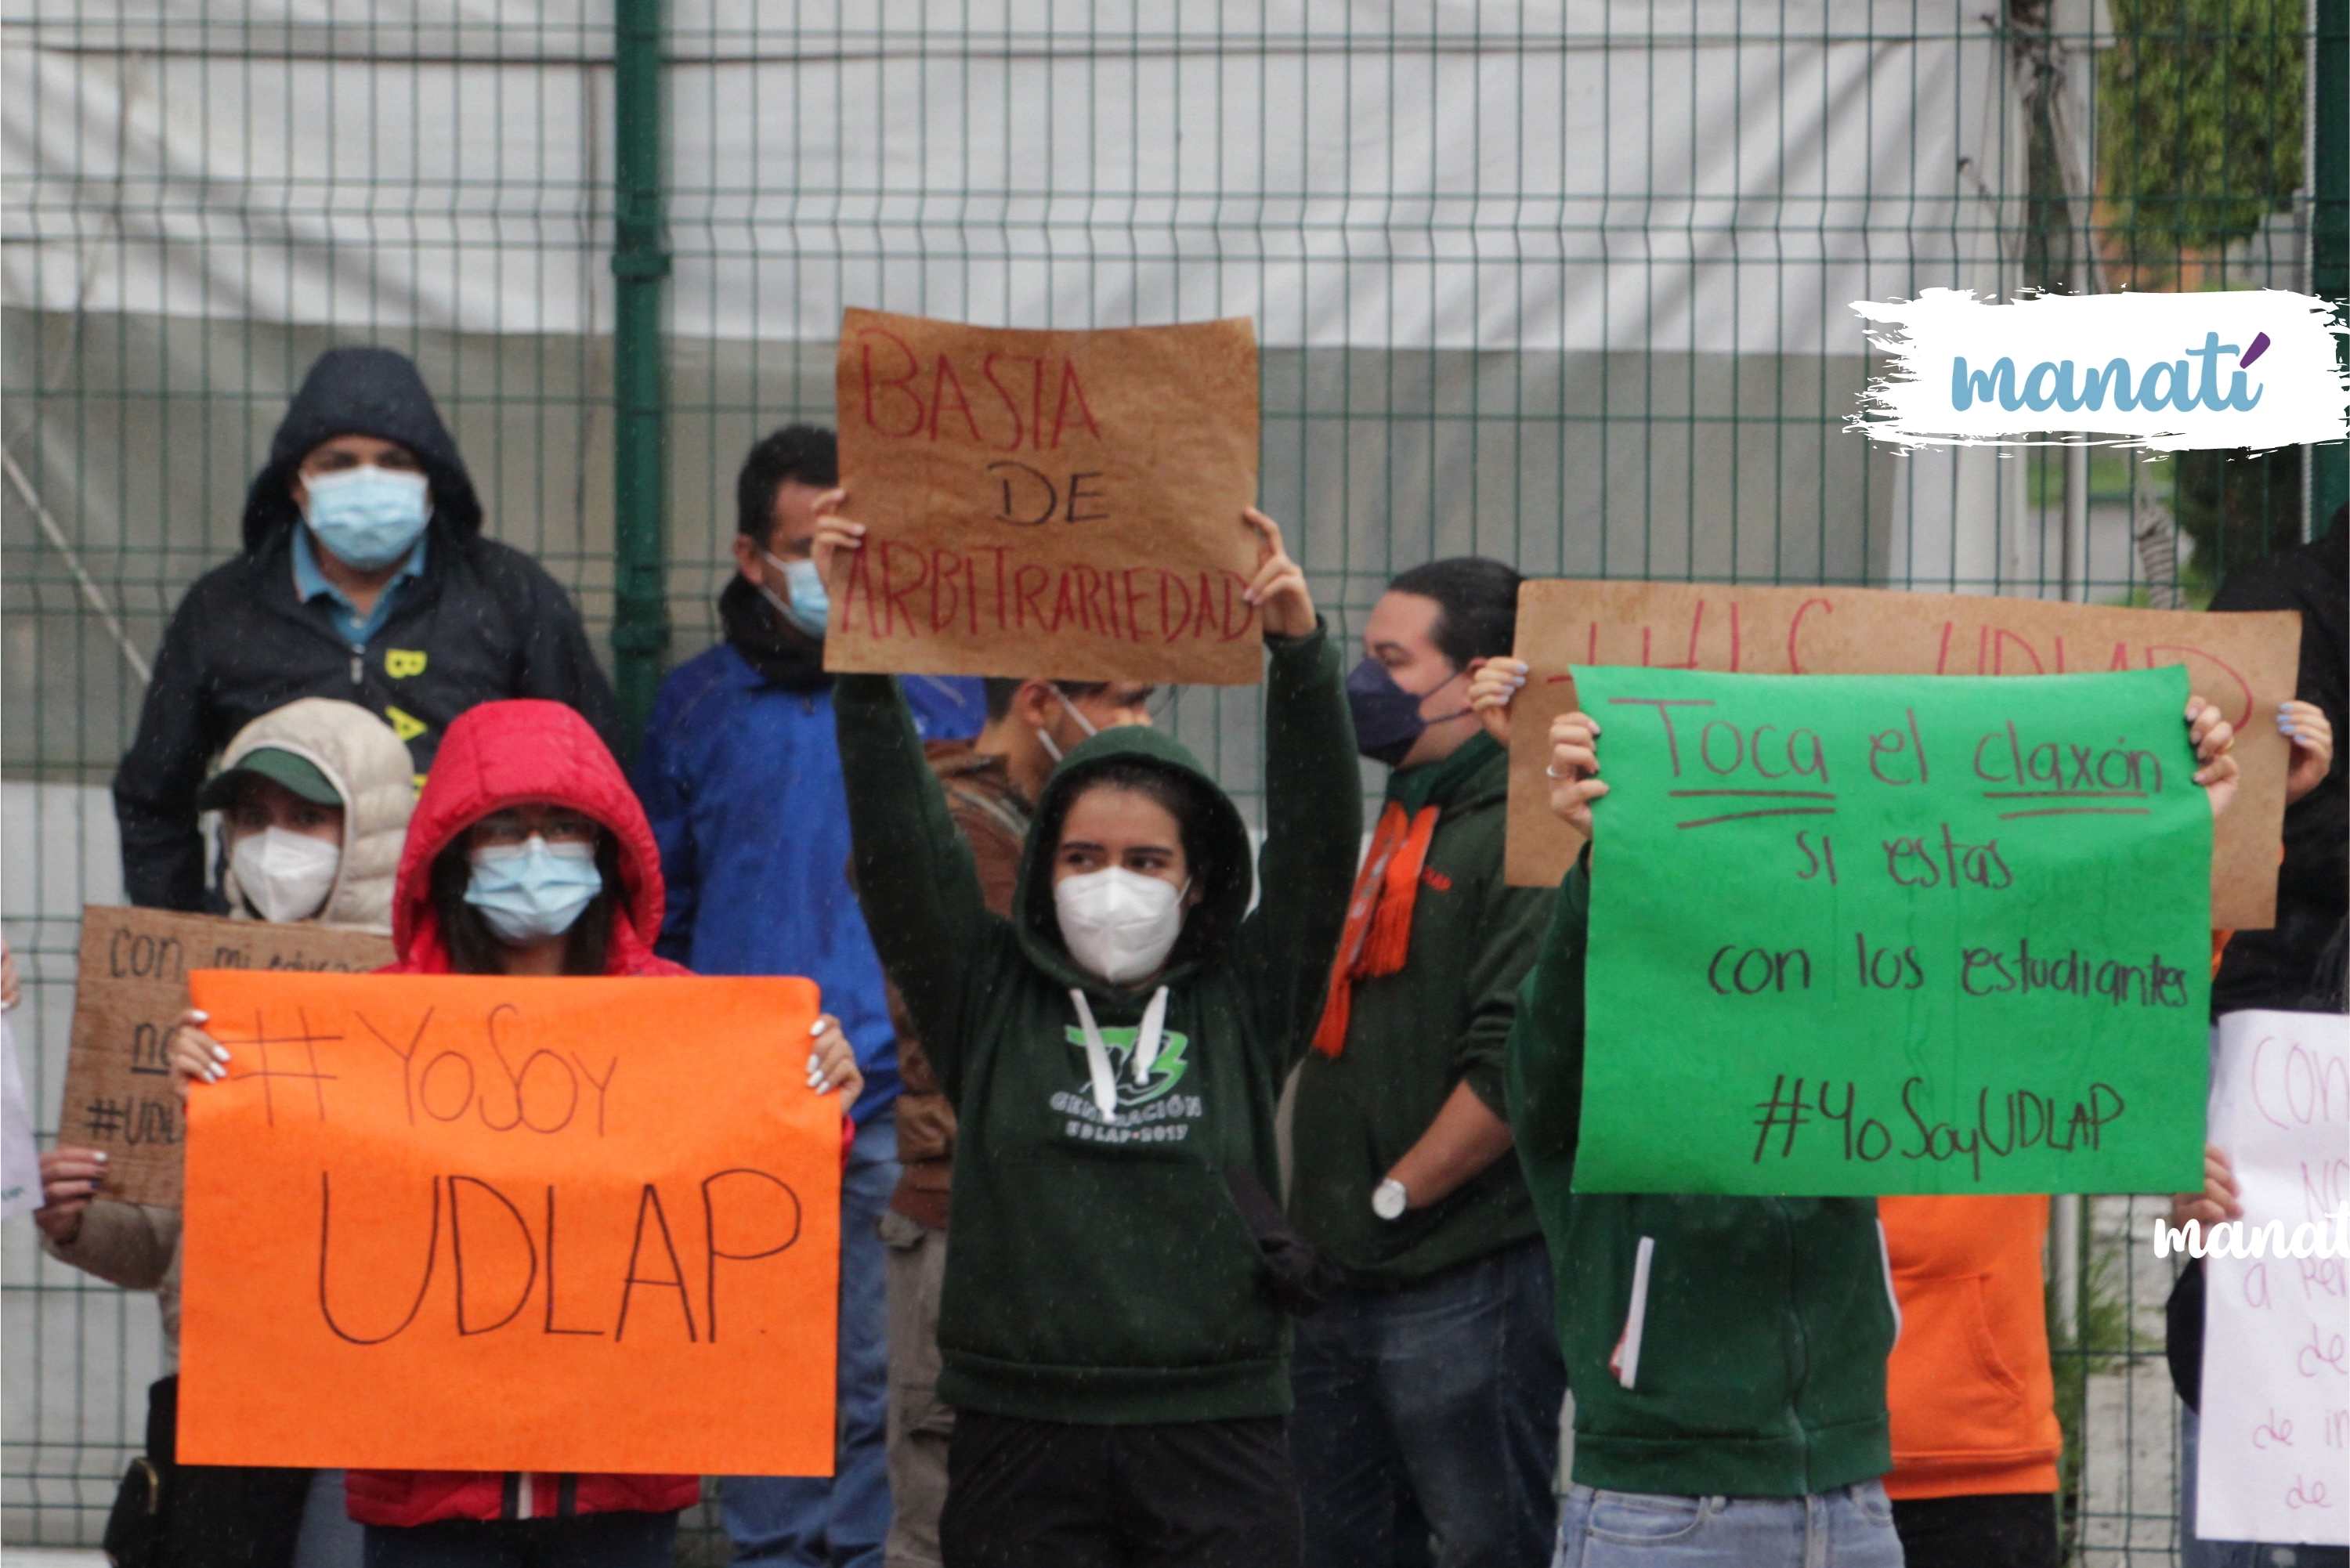 Estudiantes de la UDLAP protestaron a las afueras del campus para exigir que se retiren de manera inmediata los policías estatales que mantienen tomada la universidad. Fotografía de Katia Fernández | Es Imagen